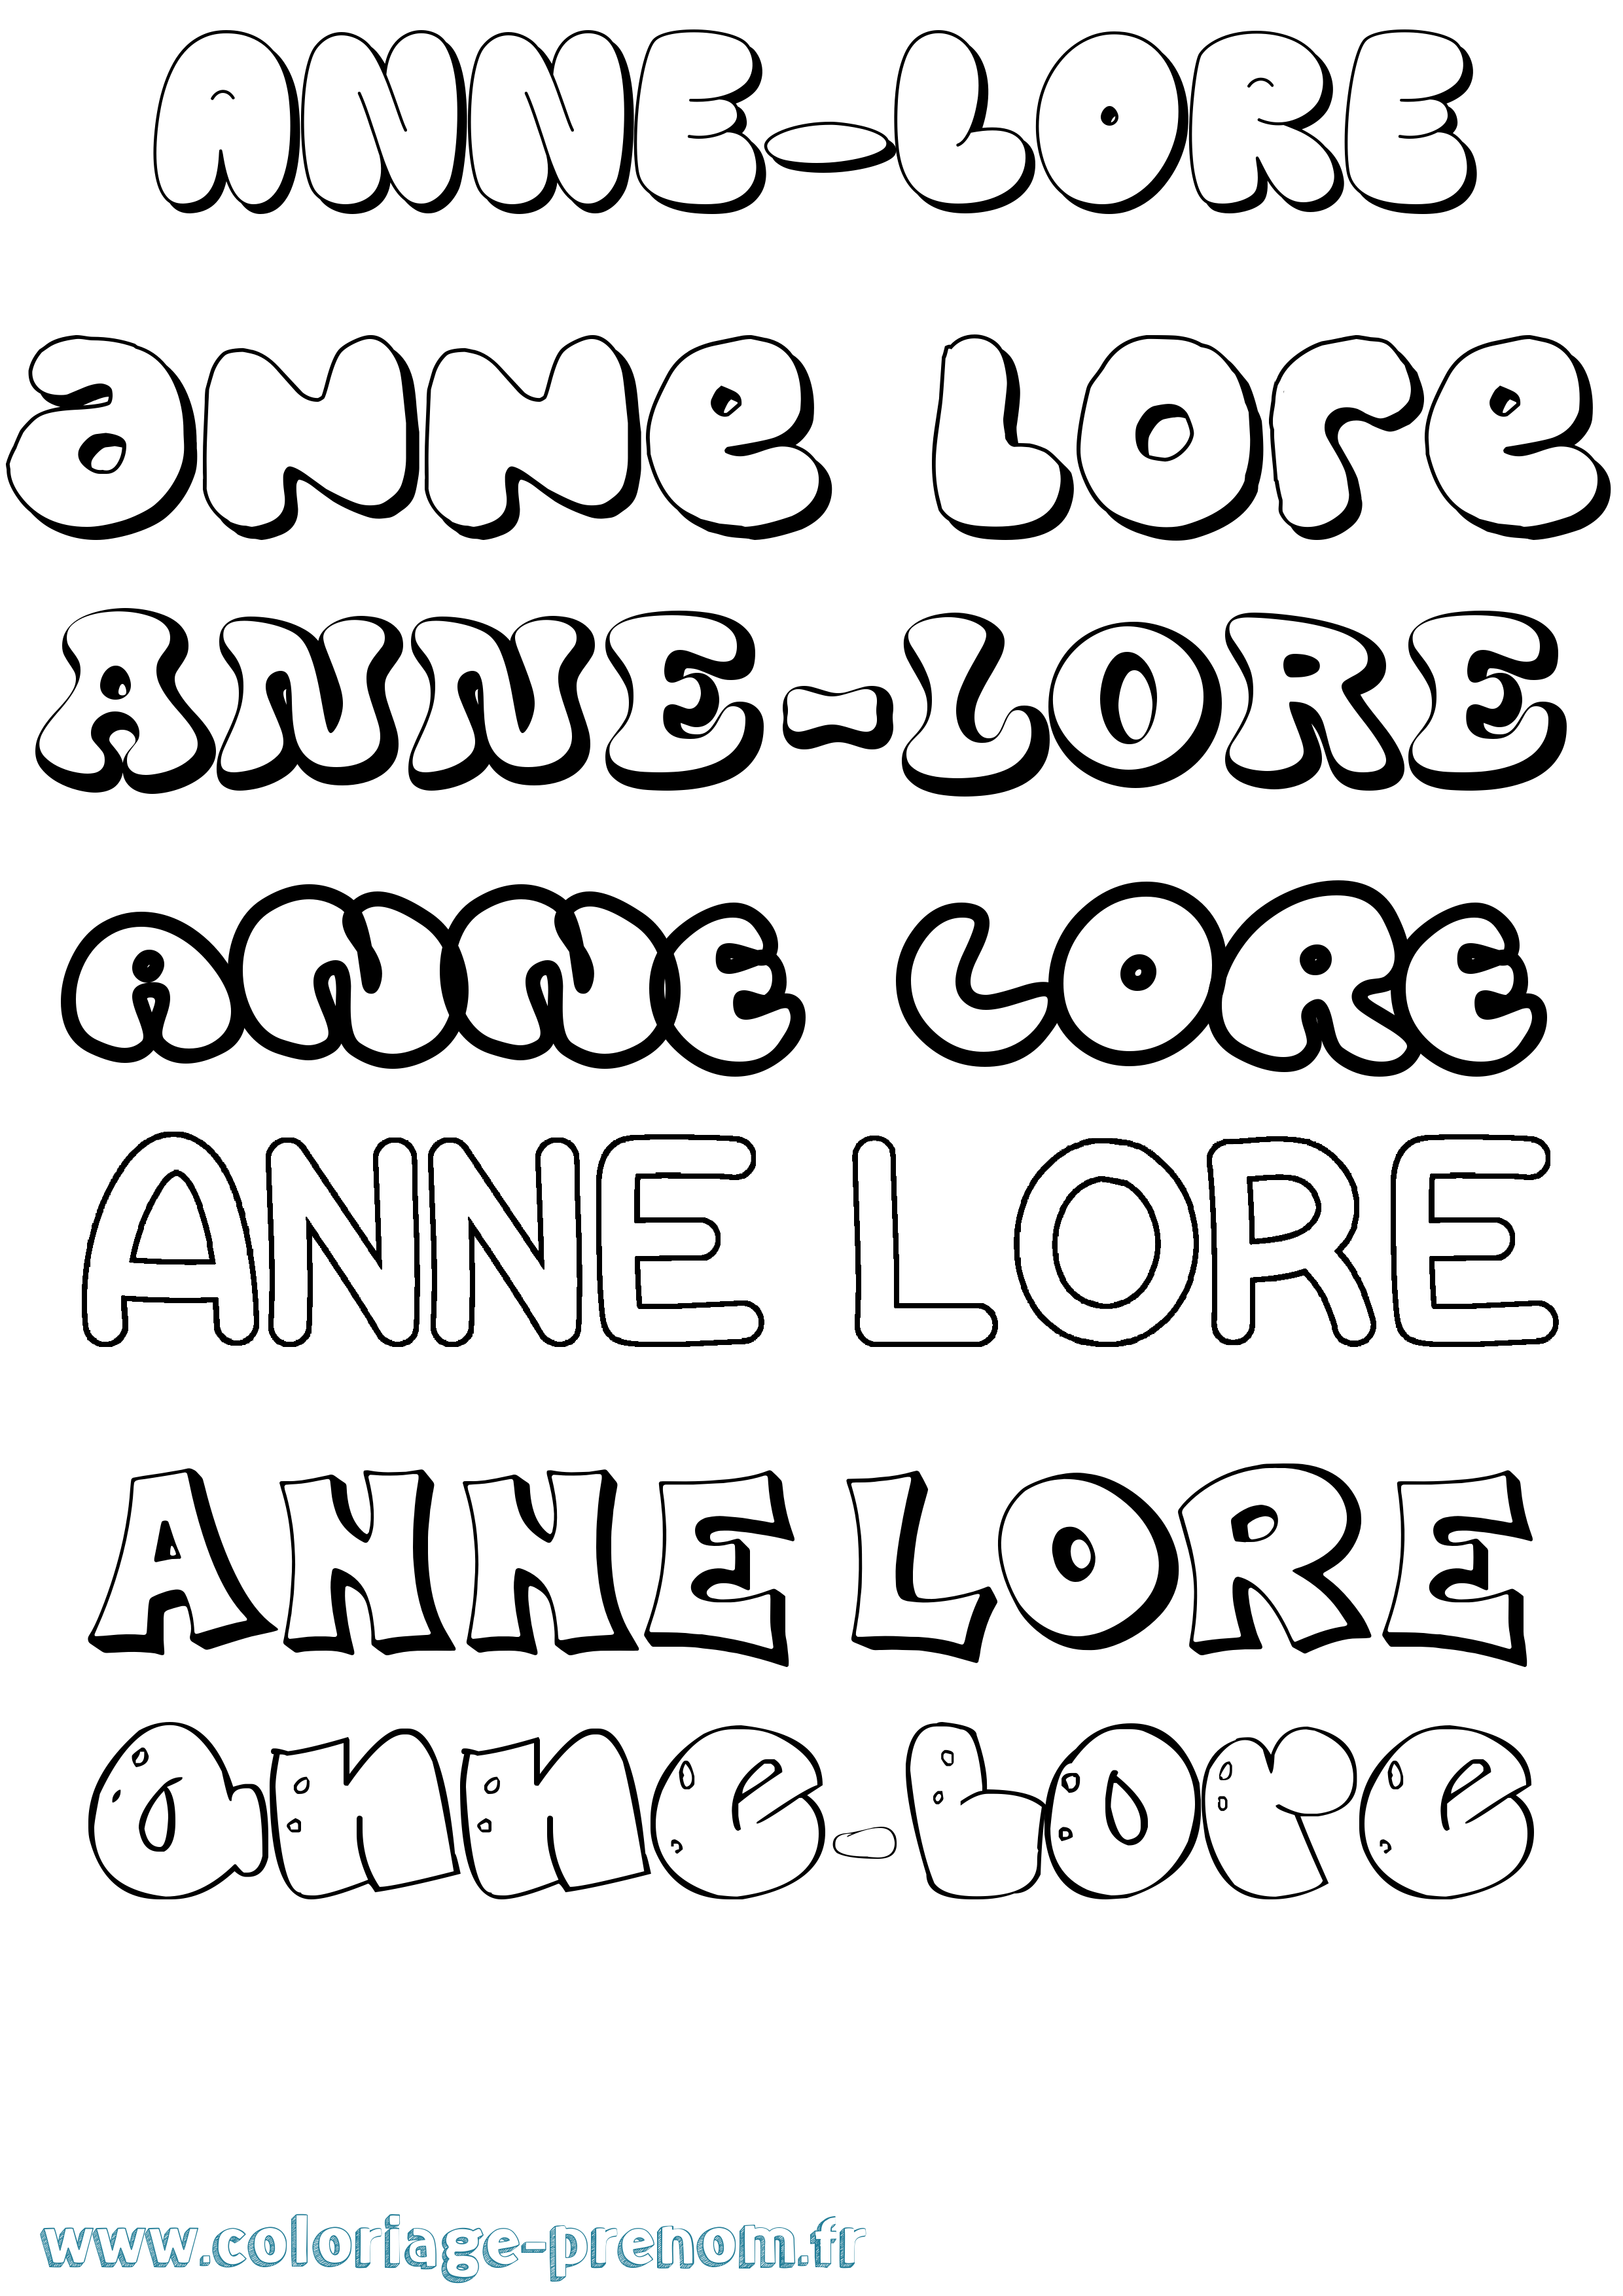 Coloriage prénom Anne-Lore Bubble